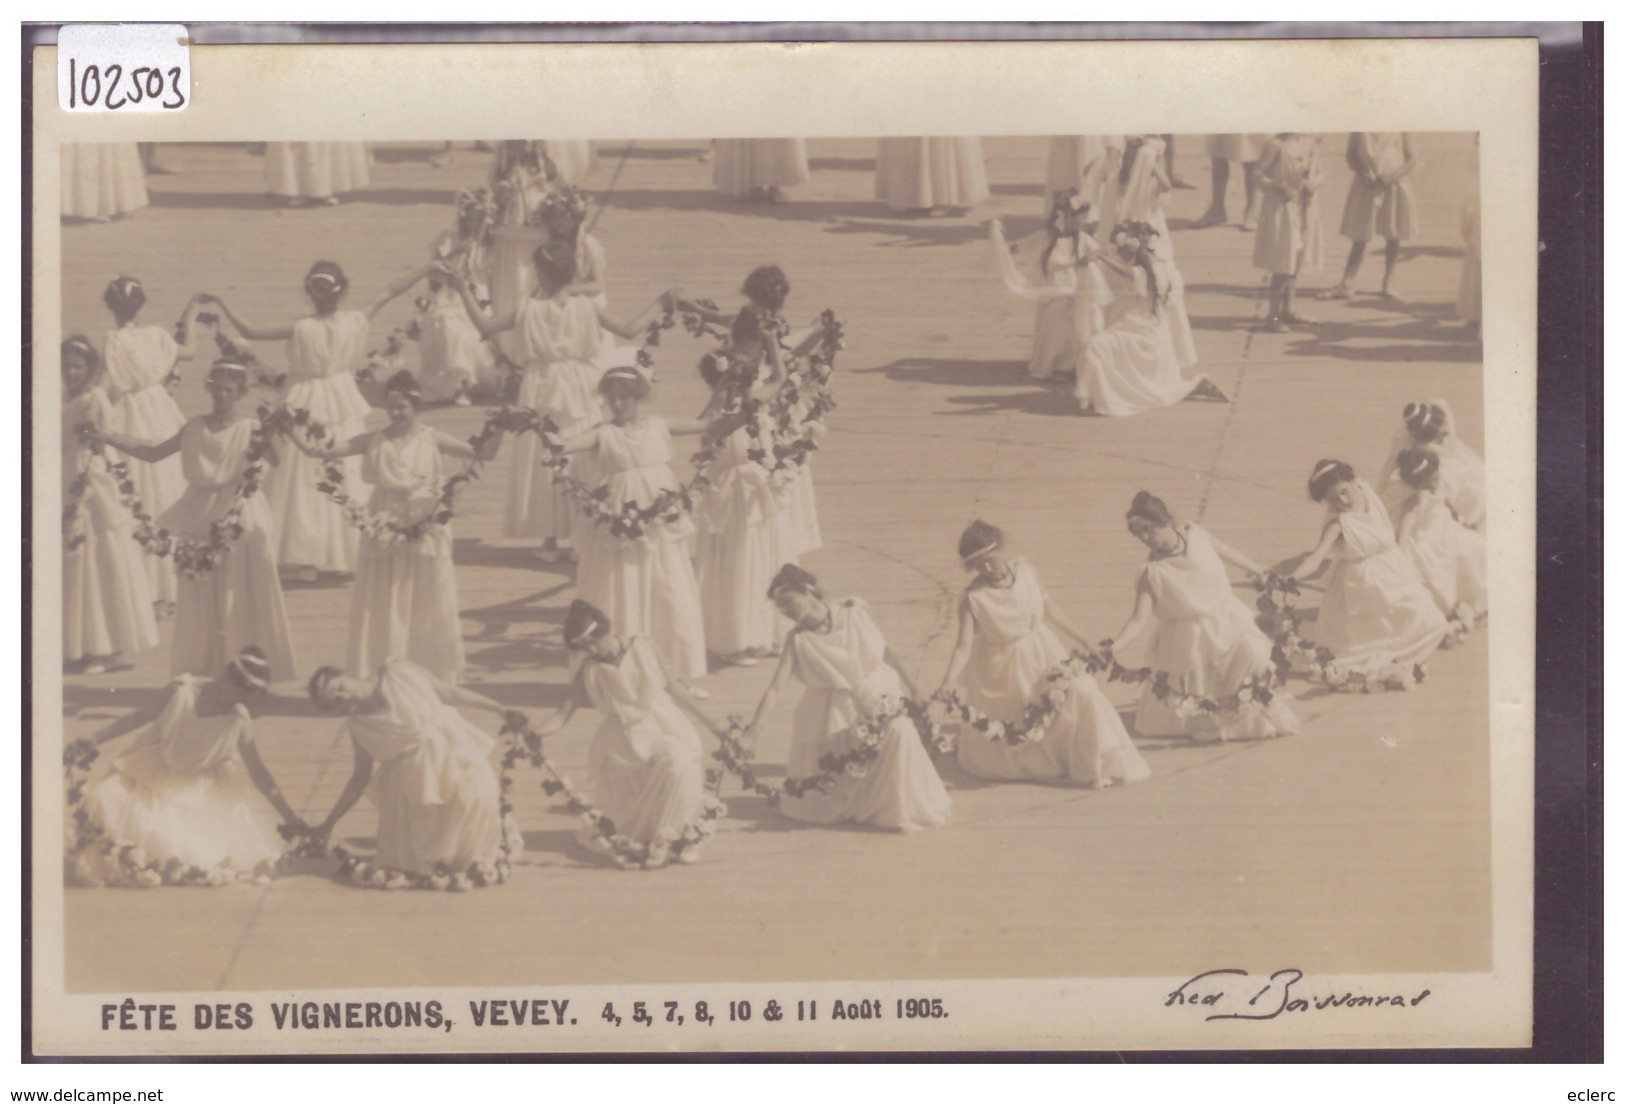 VEVEY - FETE DES VIGNERONS 1905 - EDITION FRED BOISSONNAS - CARTE CIRCULEE SANS TIMBRE CAR MILITAIRE - TB - Vevey